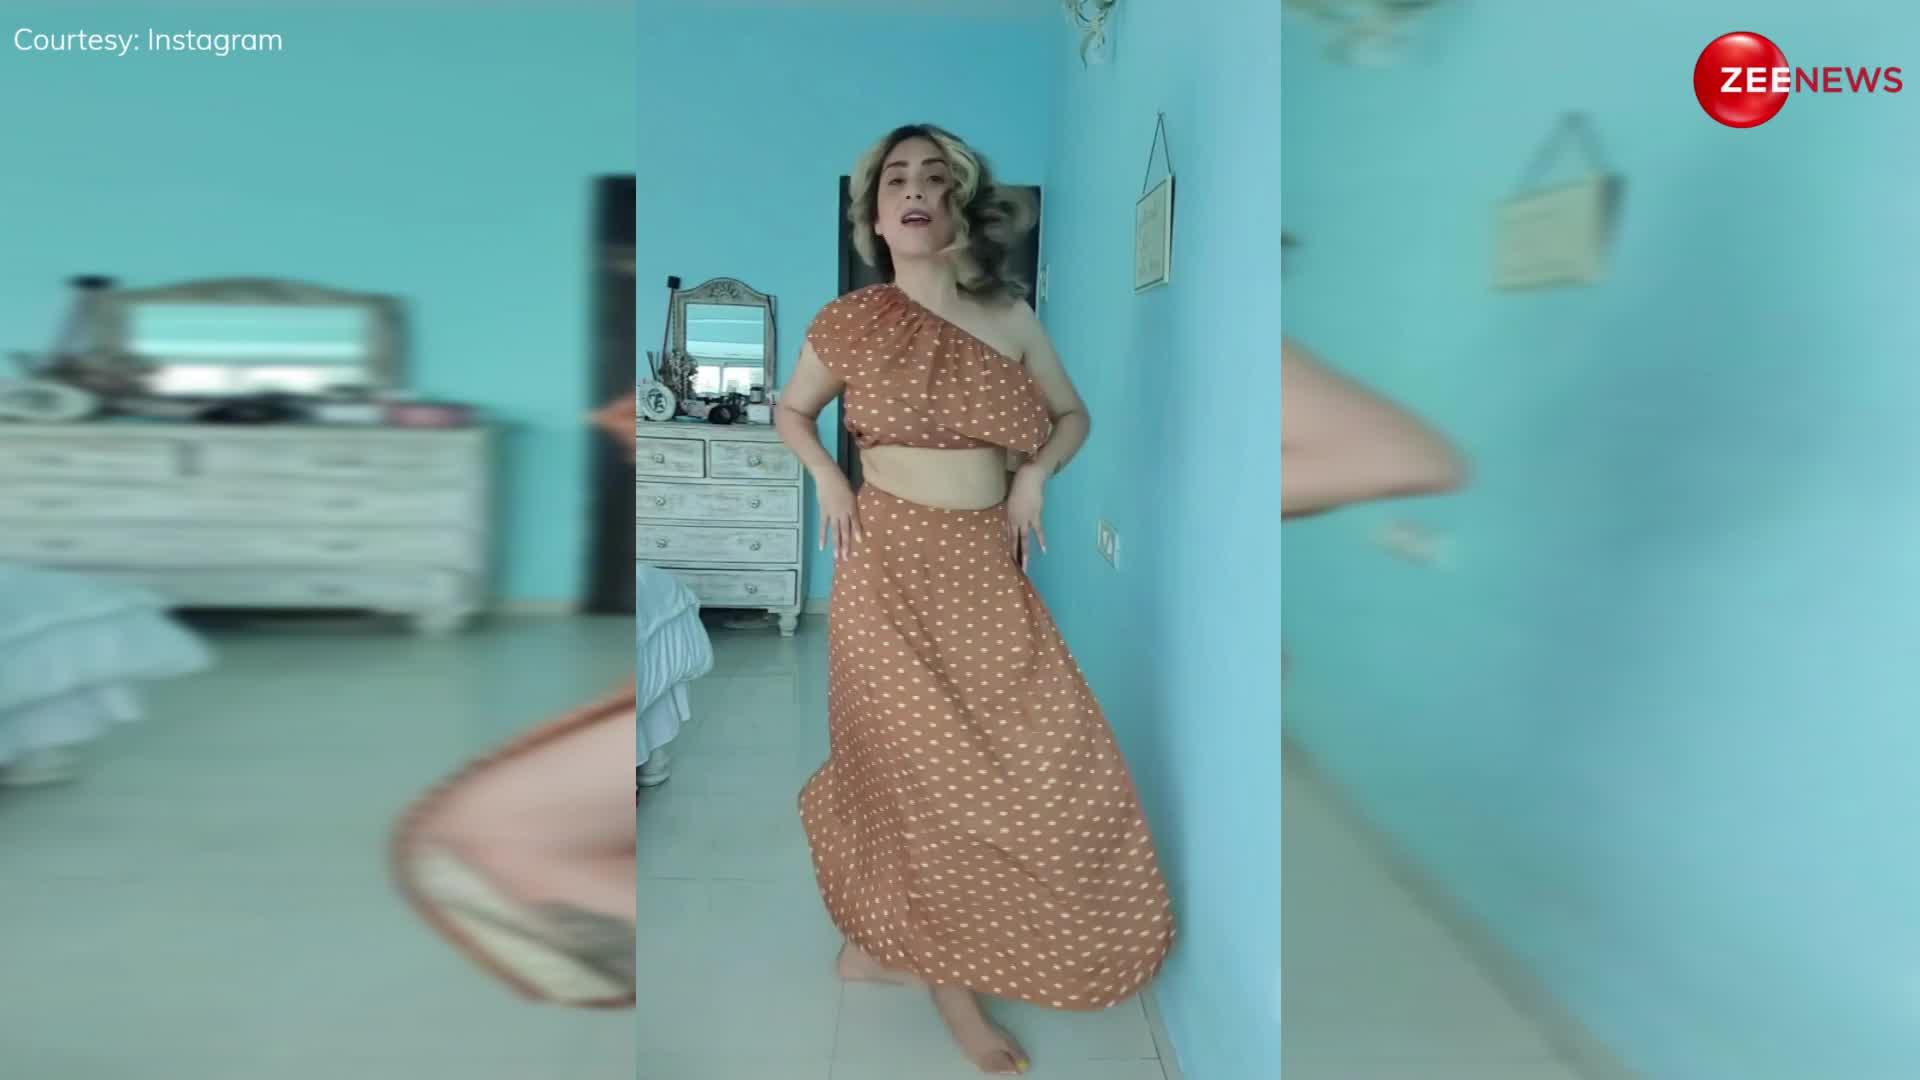 कट वाली ड्रेस पहन तितली बनी Neha Bhasin पर झेलना पड़ा oops मोमेंट, देखें ये वायरल वीडियो